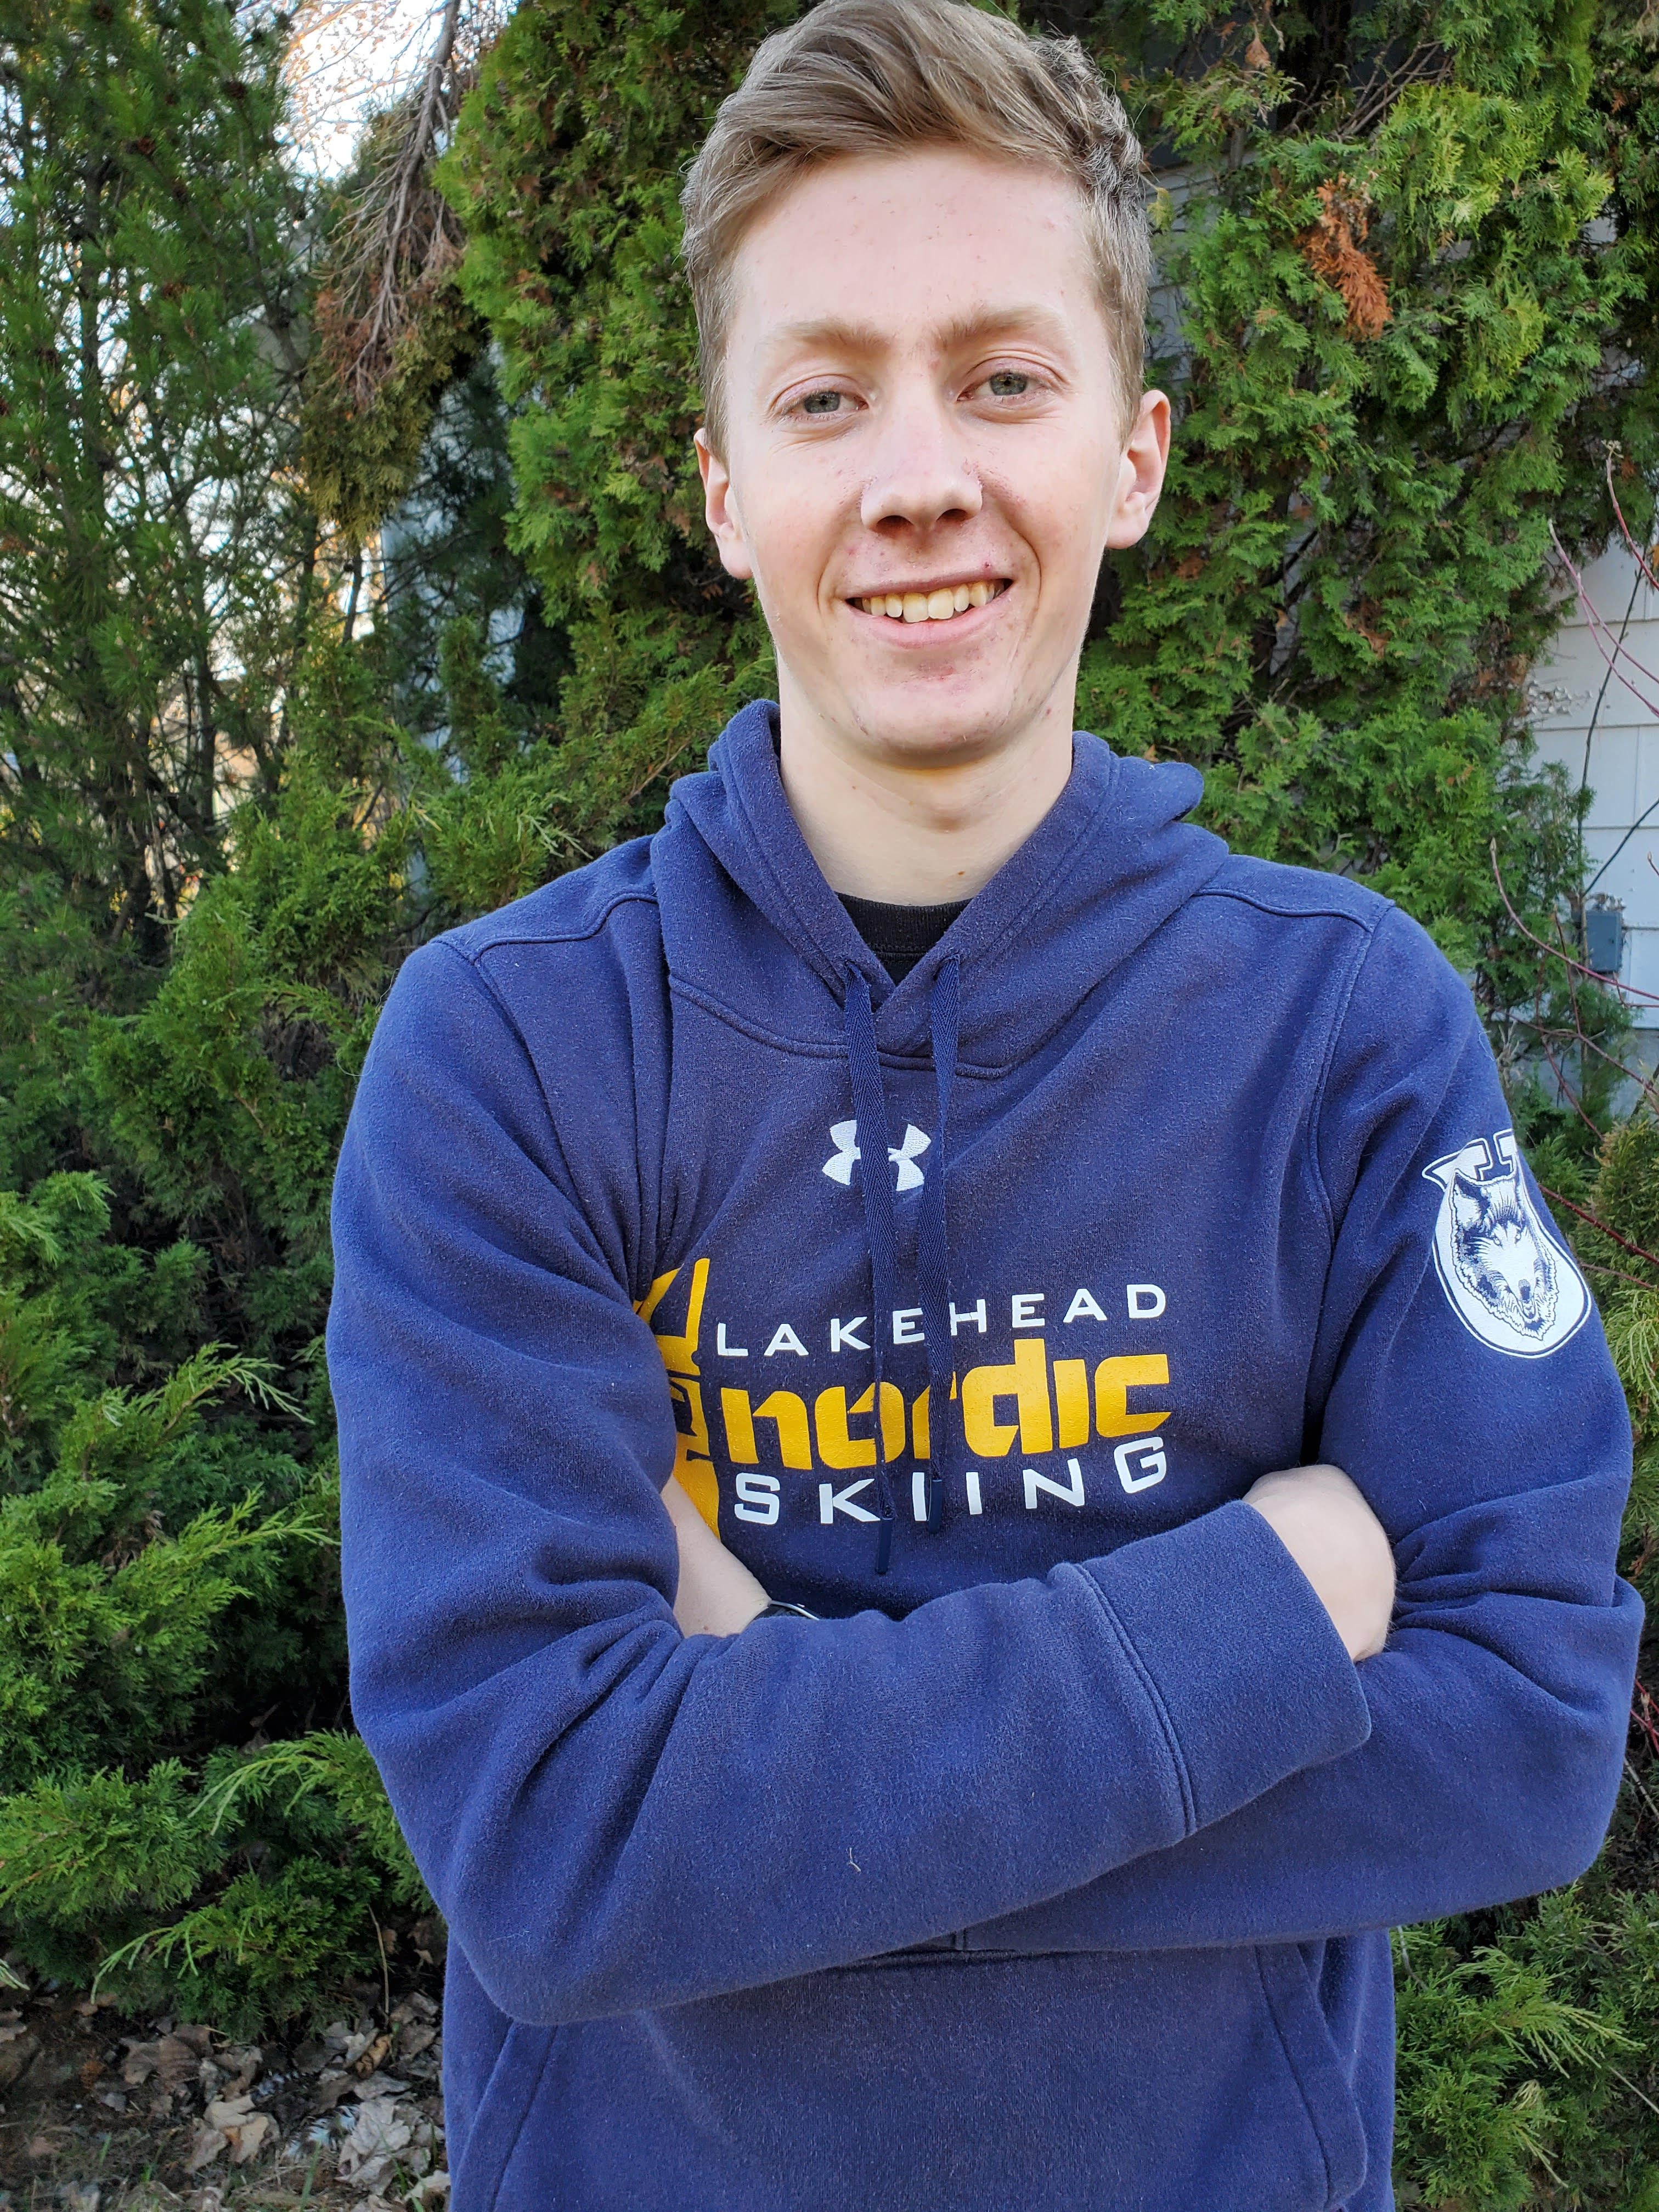 Image of Aaron Warkentine wearing a blue Lakehead Nordic Ski sweater